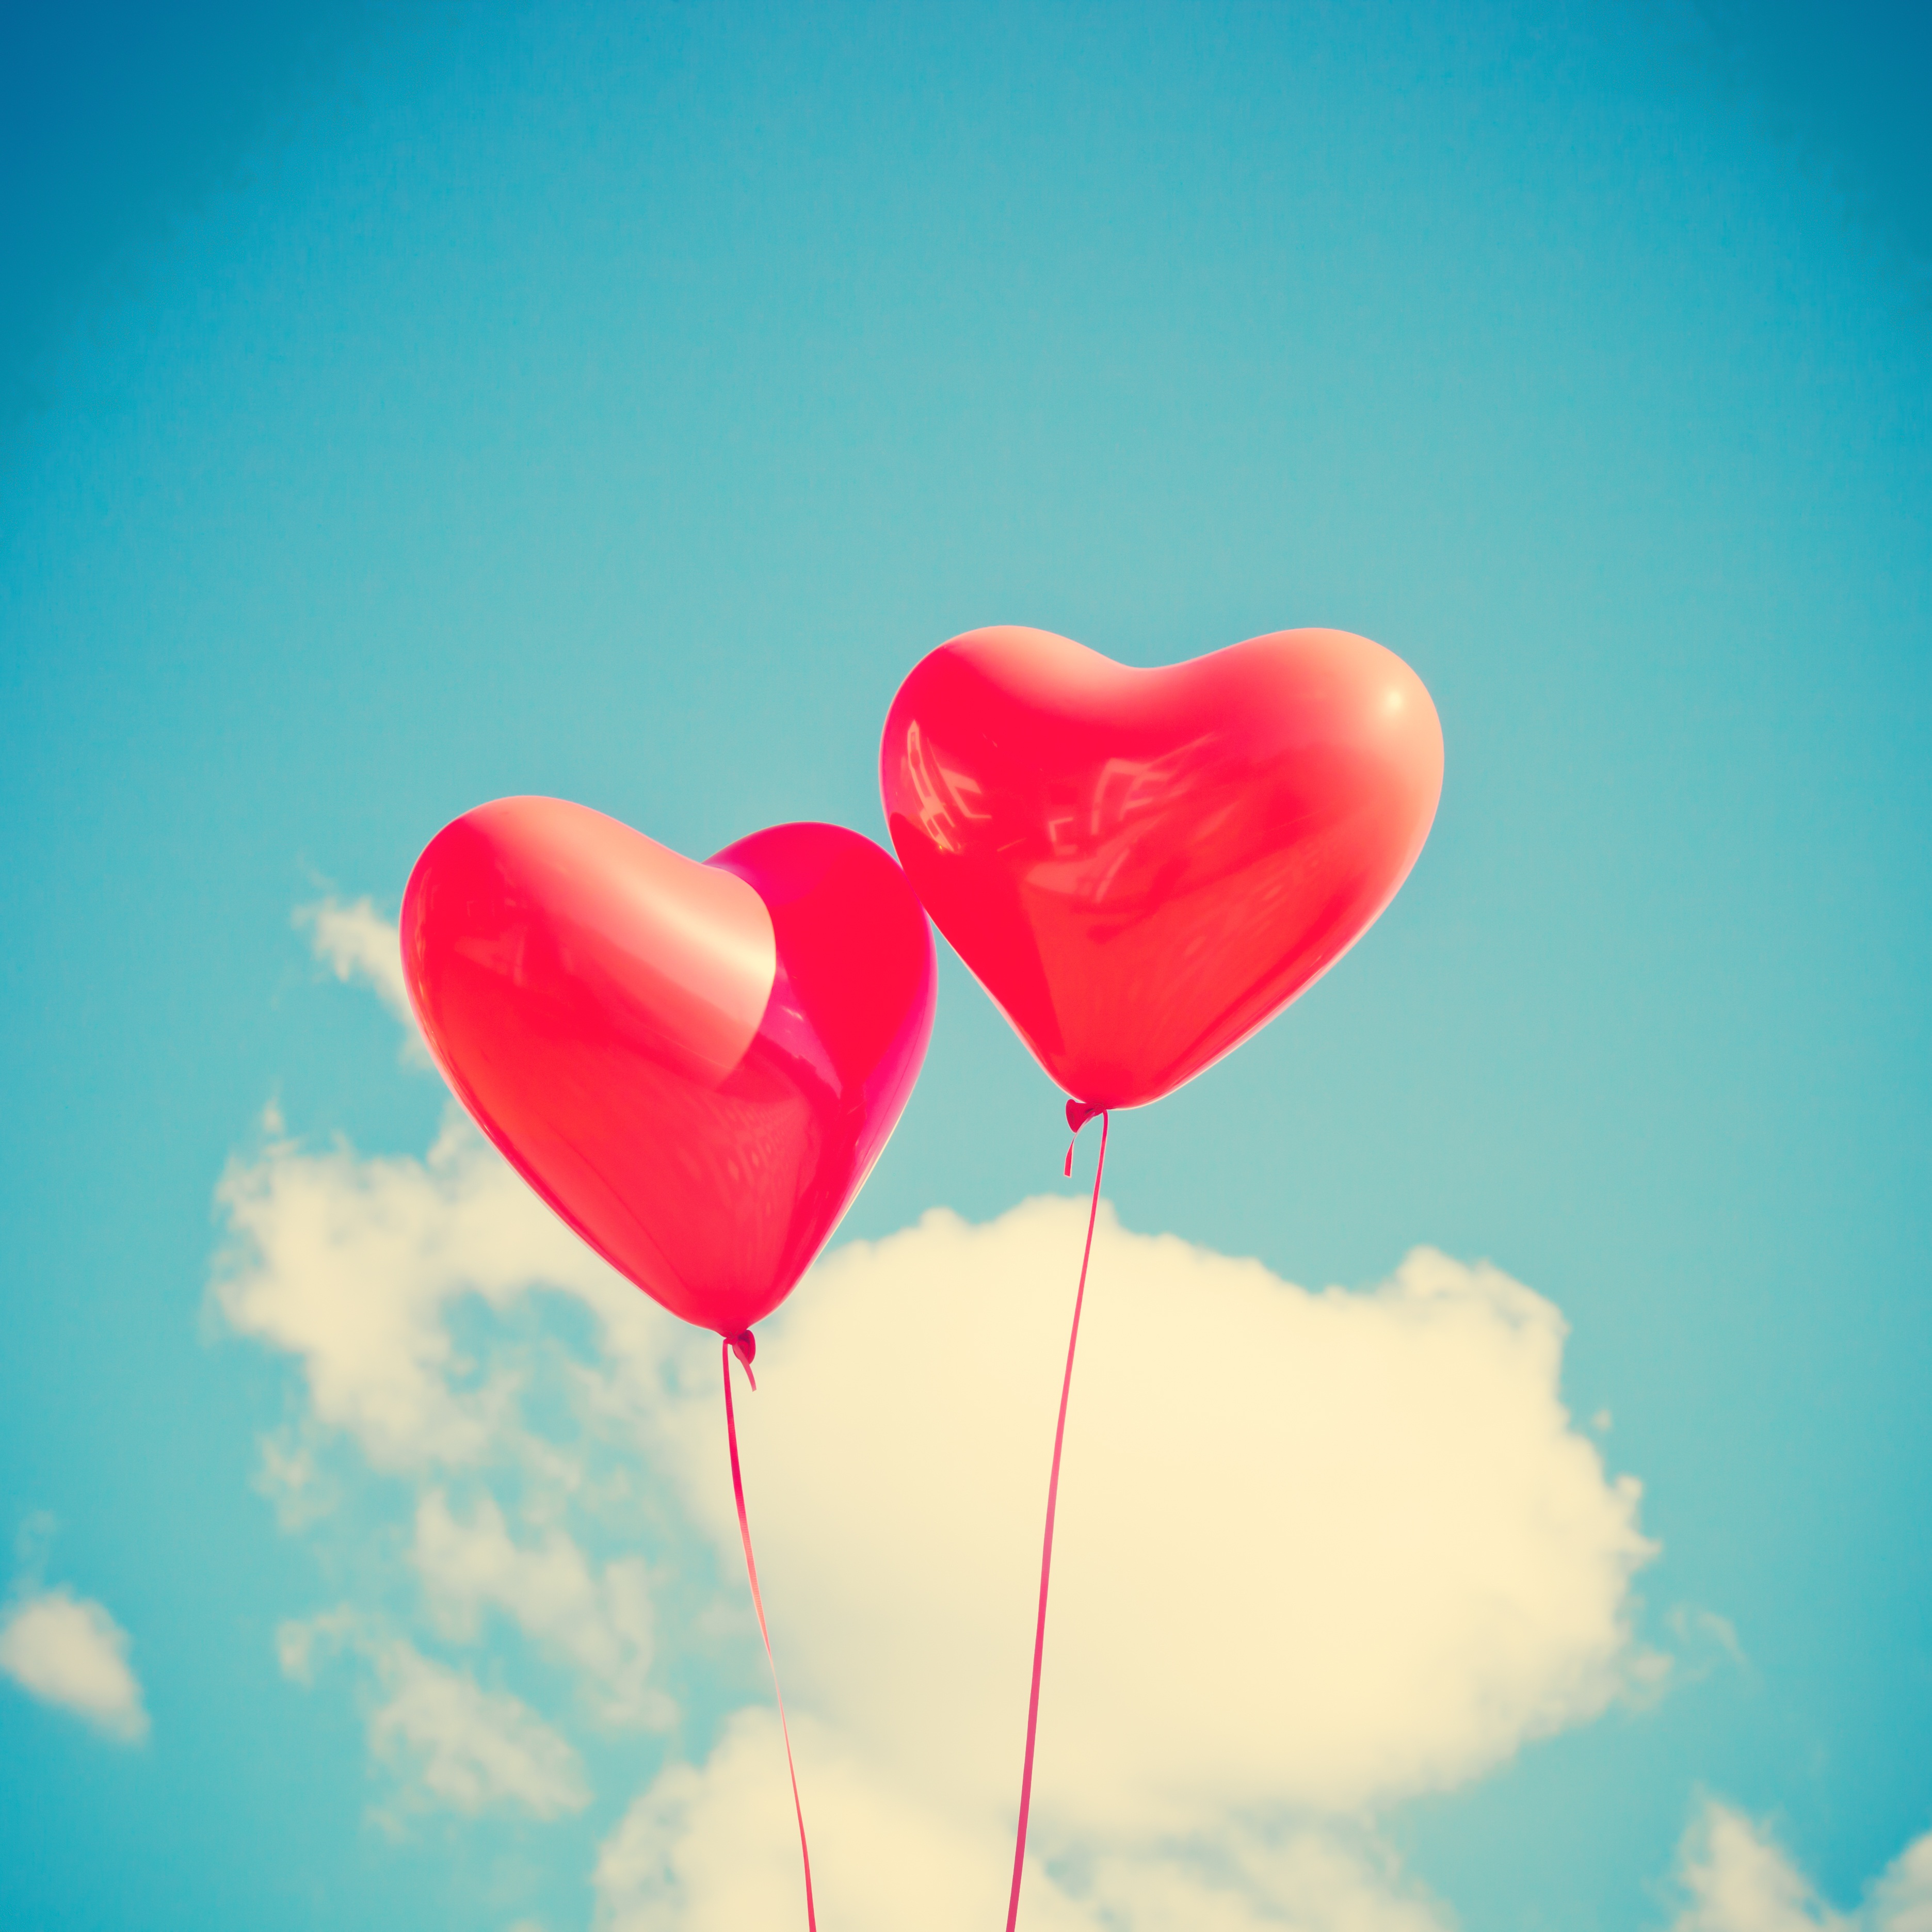 heart, balloons, love, sky, ease 32K